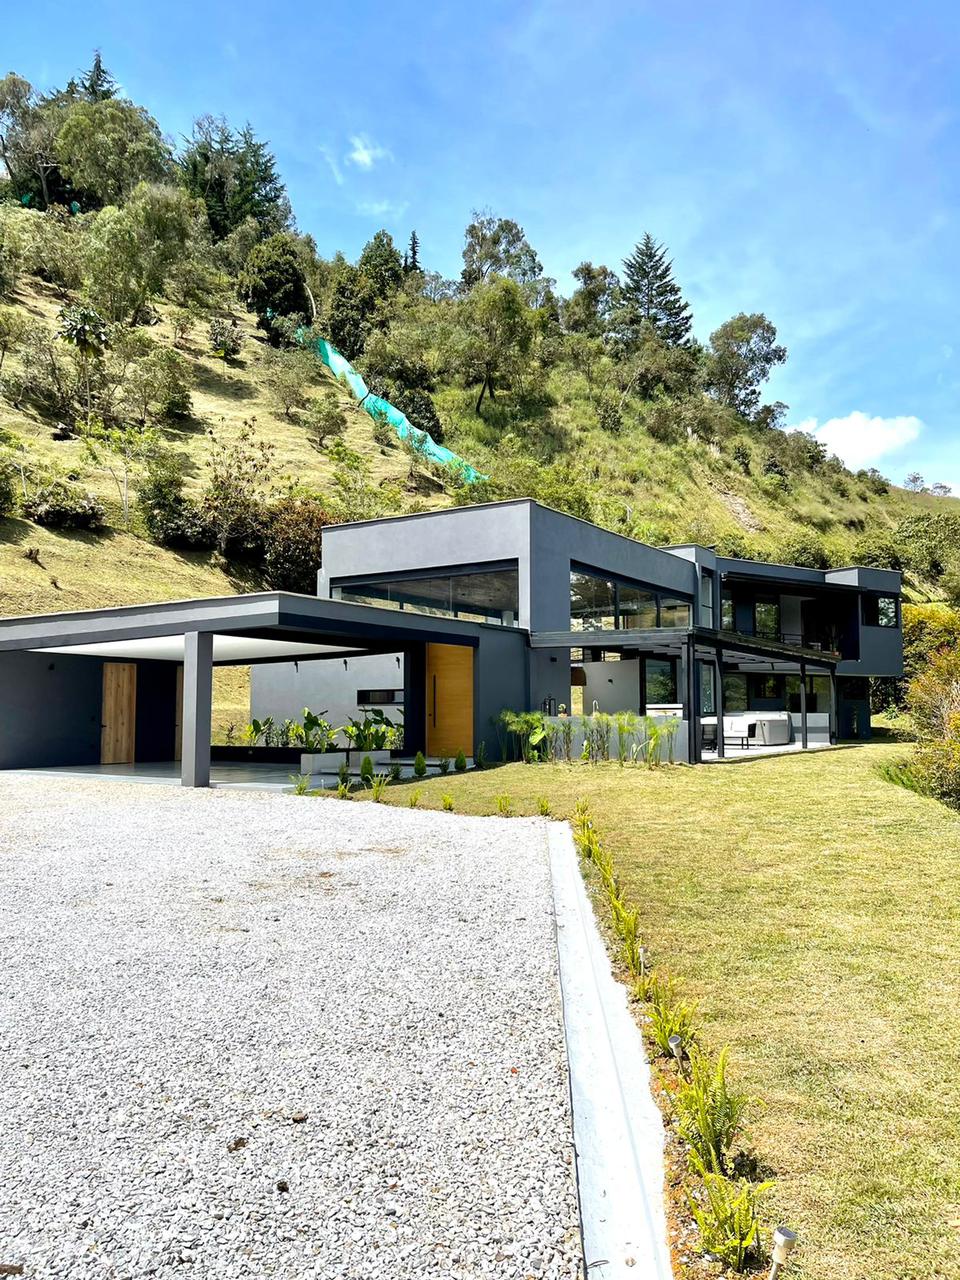 Nueva, futurista, moderna, de concepto abierto, luminosa, ventilada, única casa campestre en La Ceja a una hora de Medellín.